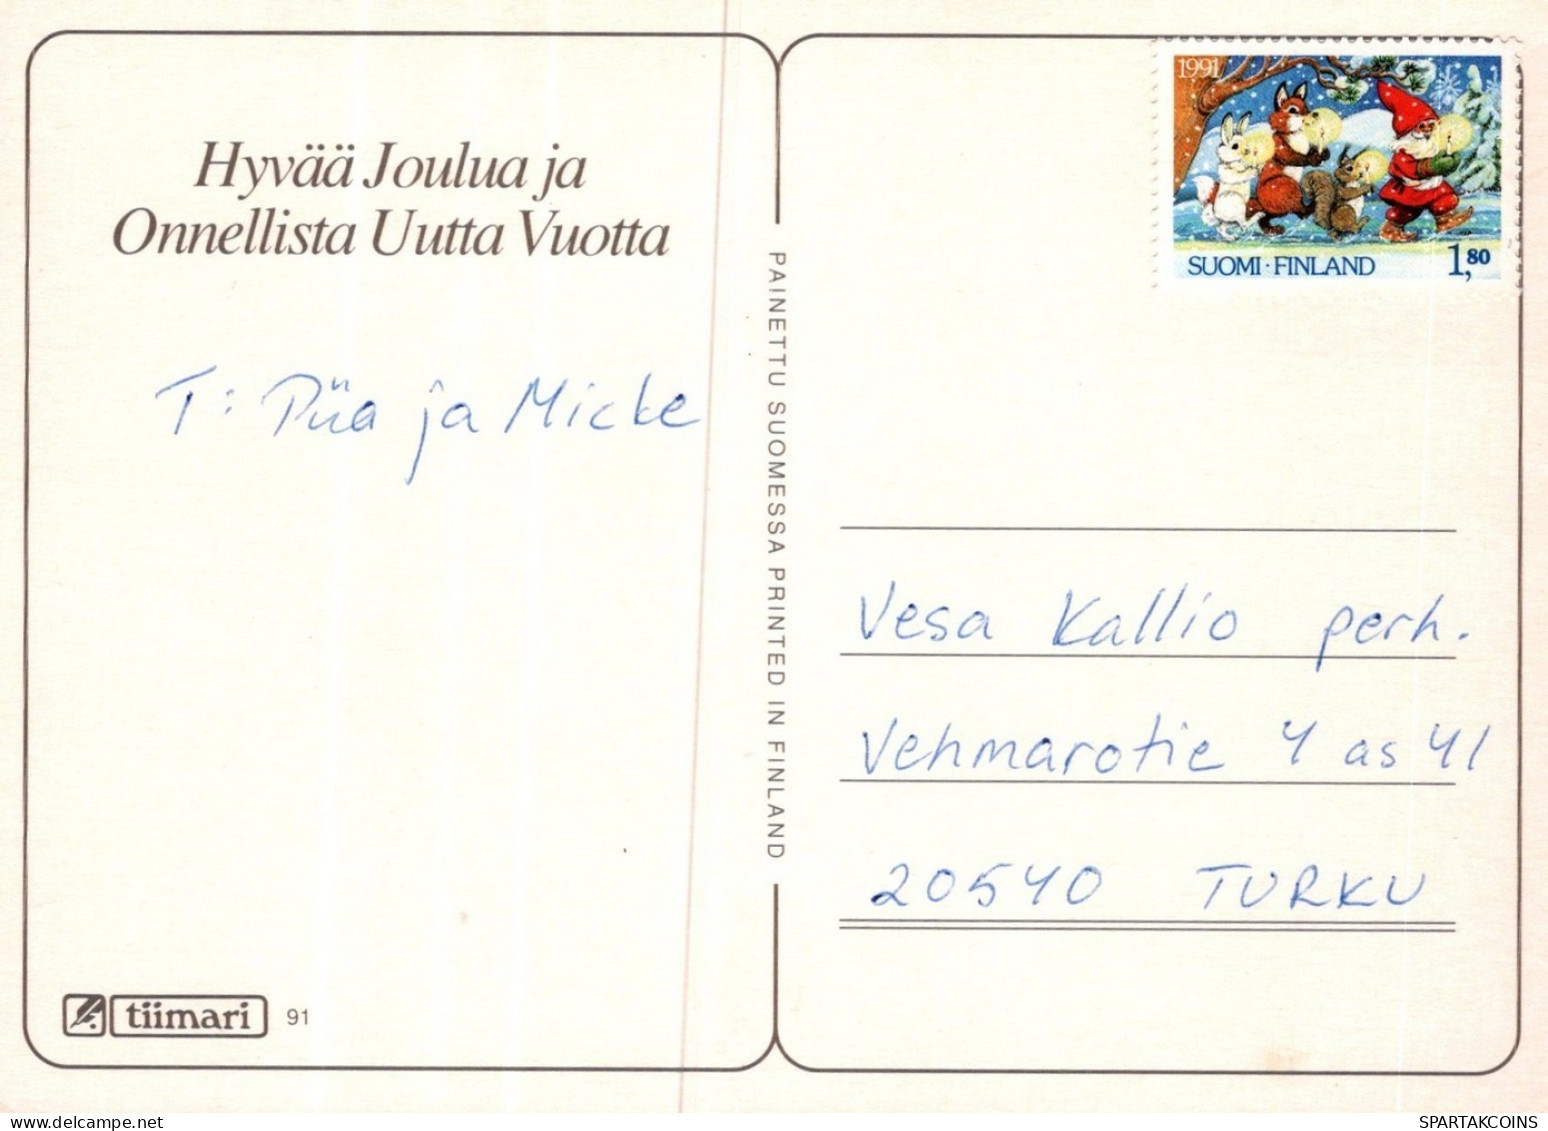 PÈRE NOËL Animaux NOËL Fêtes Voeux Vintage Carte Postale CPSM #PAK577.FR - Santa Claus